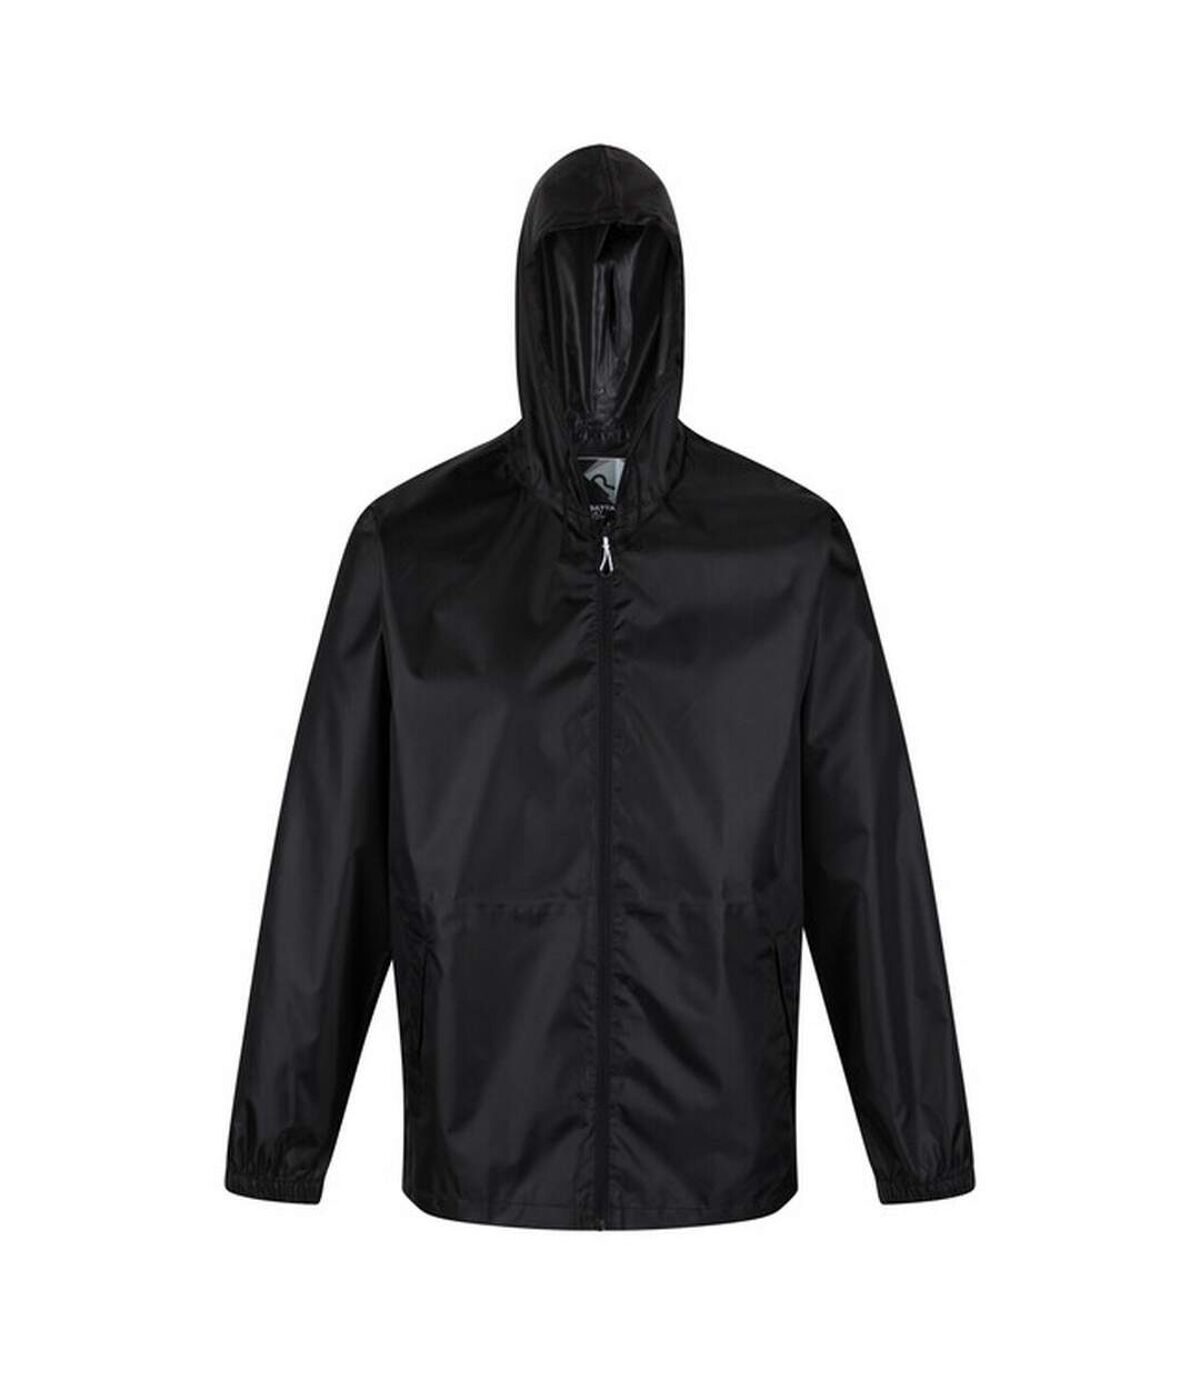 Regatta Unisex Adult Packaway Waterproof Jacket And Trousers Set (Black)